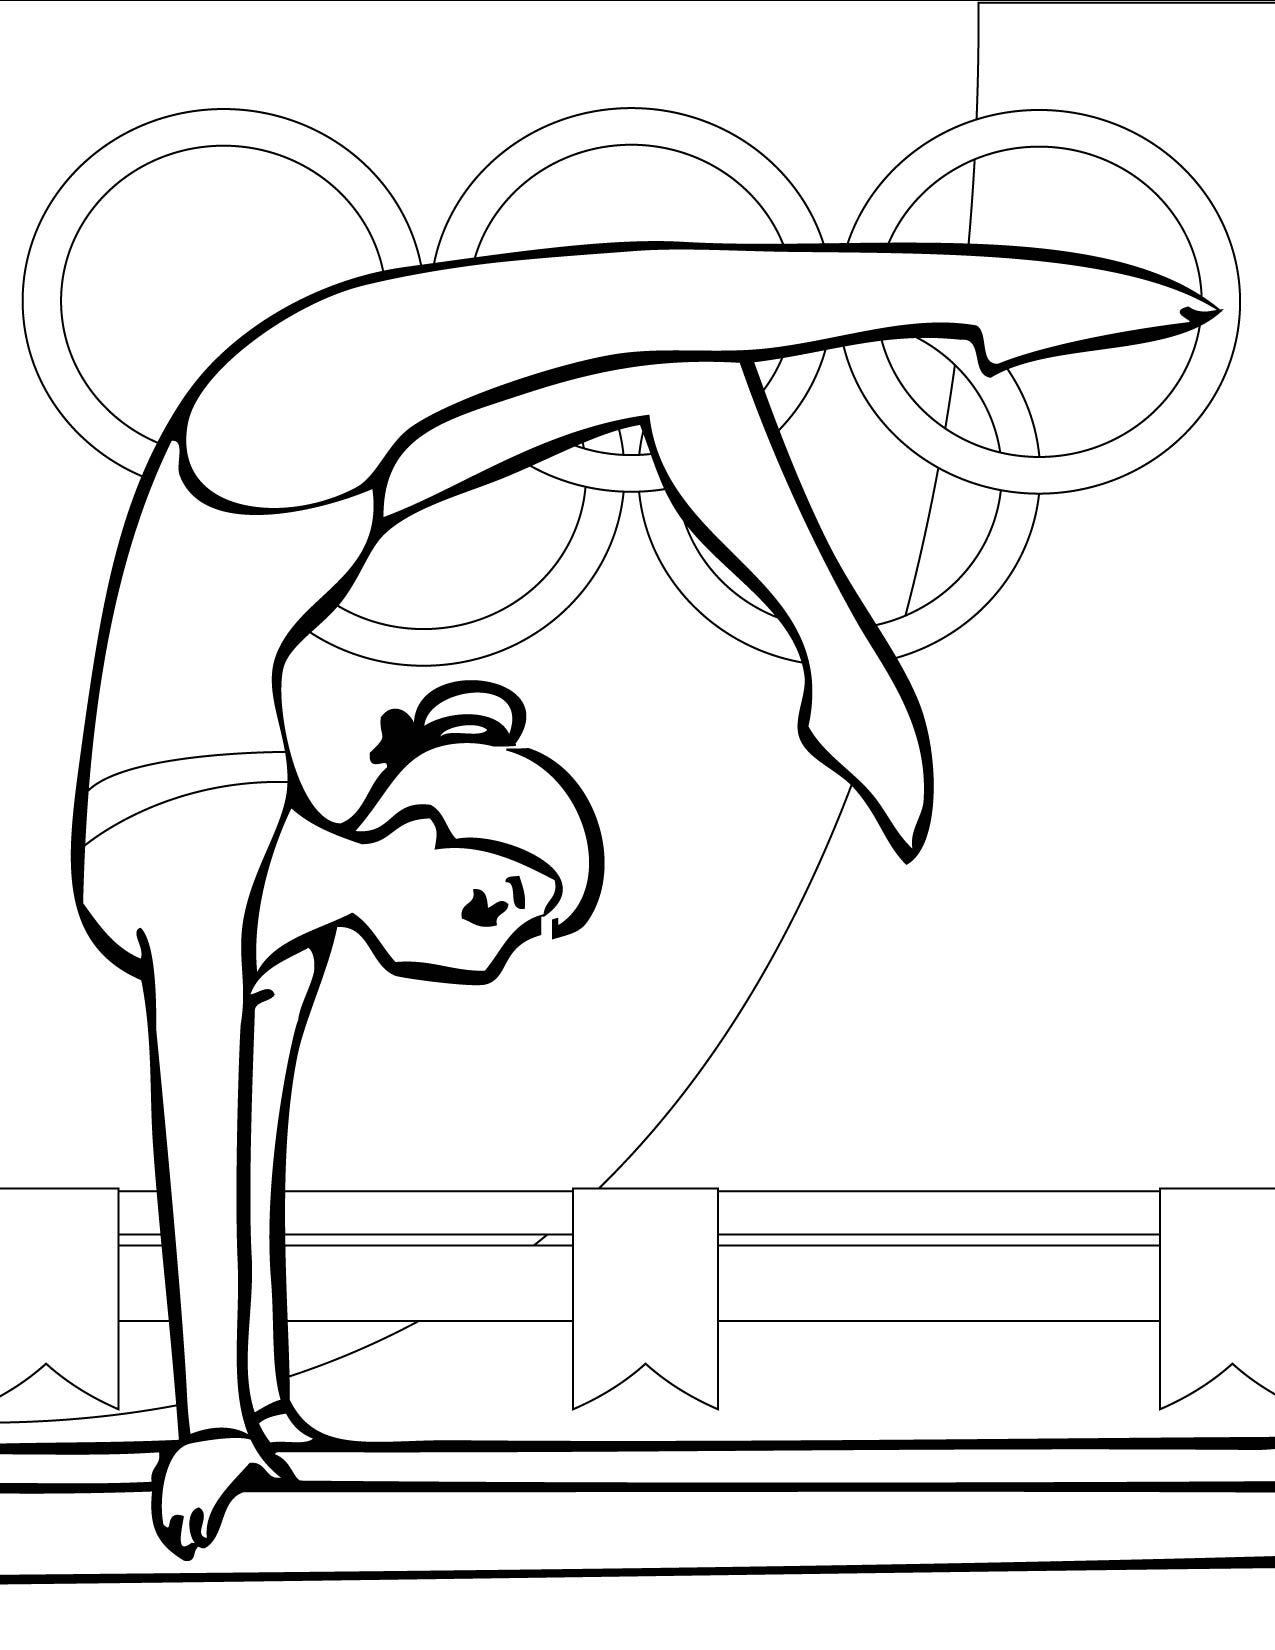 gymnastics-coloring-pages-kidsuki